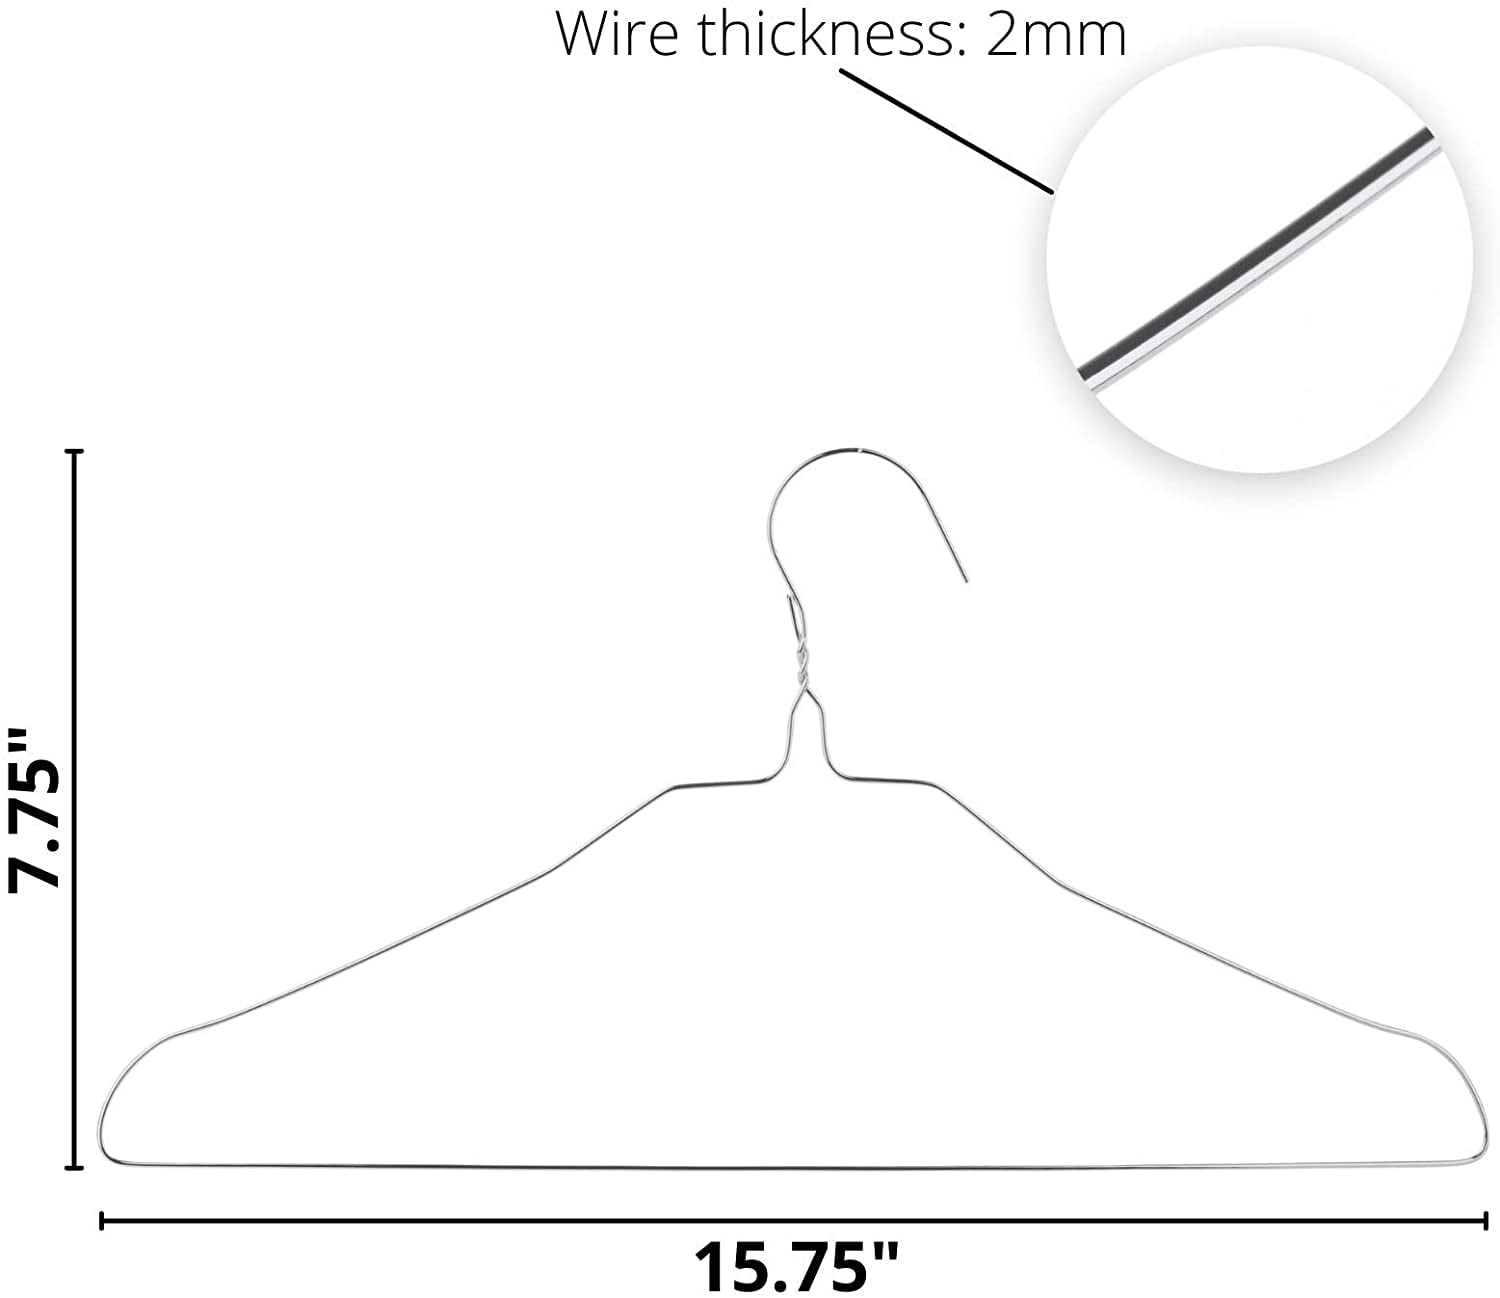 Mr. Pen- Wire Hangers, 10 Pack, Metal Hangers, Wire Hangers for Clothes,  Wire Coat Hangers, Metal Clothes Hanger, Silver Hangers, Shirt Hangers,  Slim